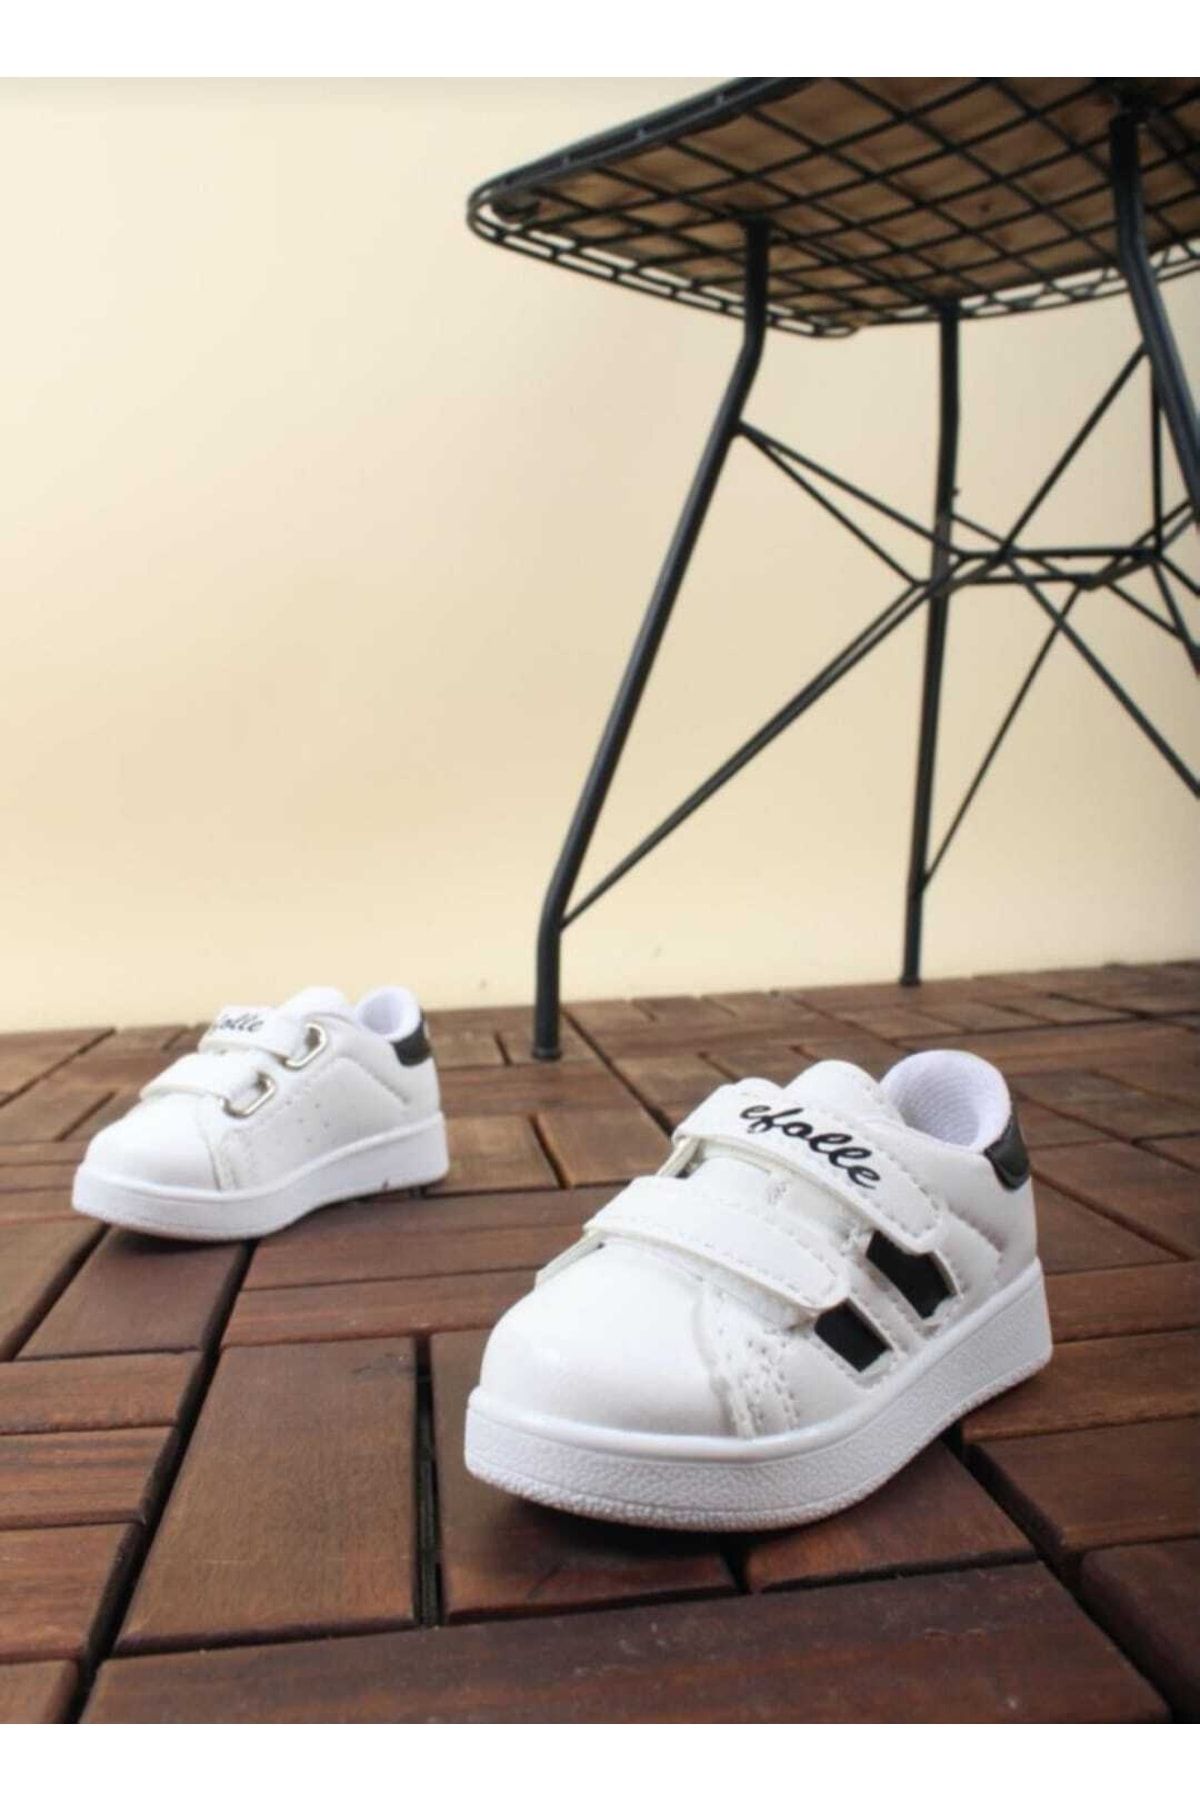 DARKLOW Efl-2b Bebek Spor Sneaker Günlük Cırtlı Spor Ayakkabı Beyaz-siyah